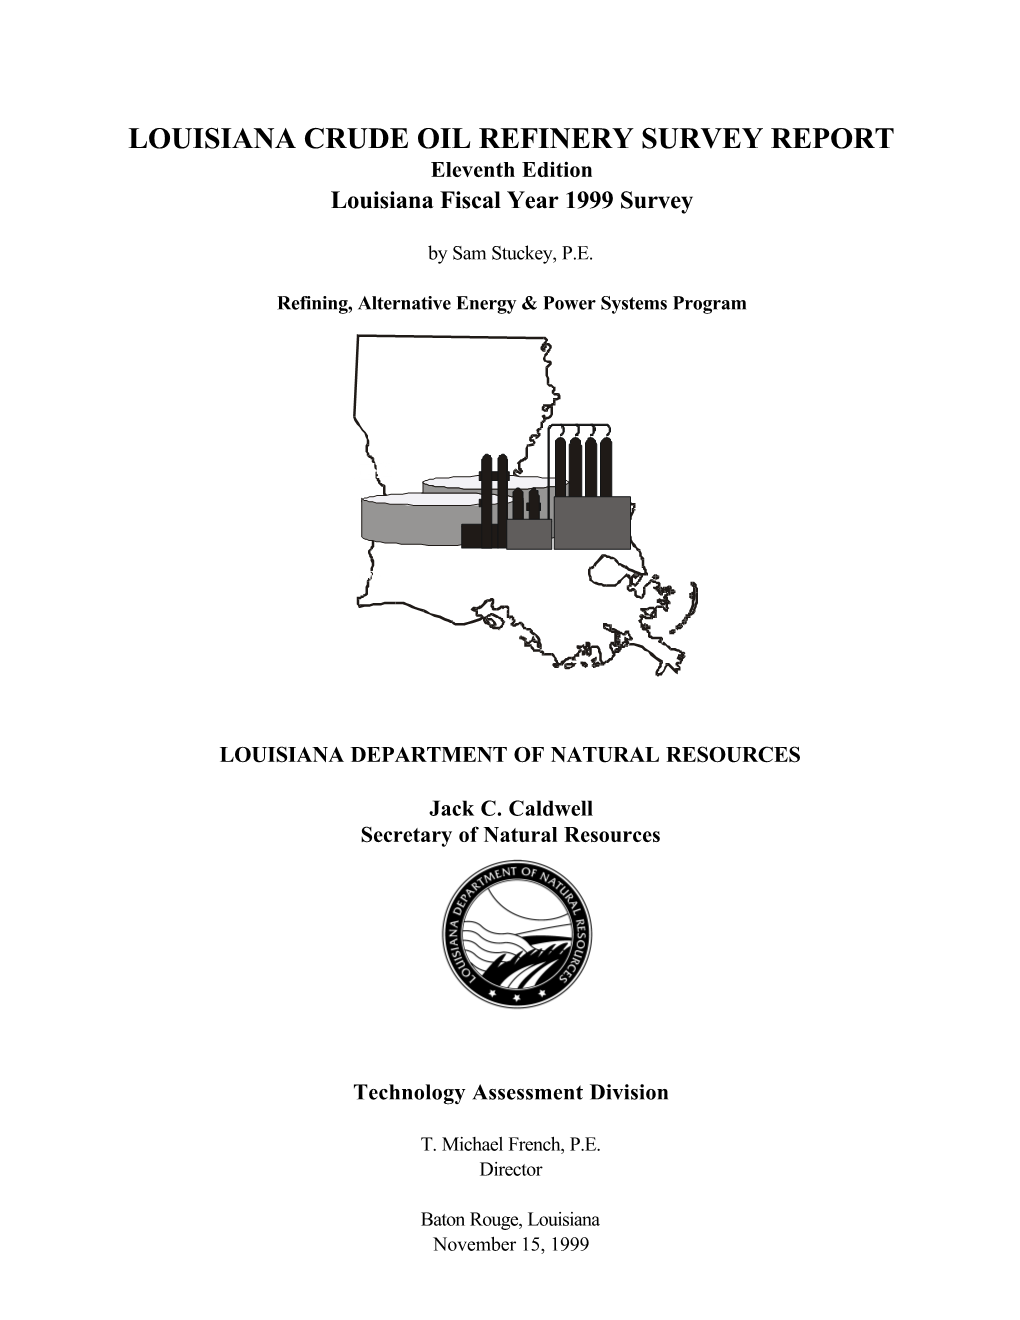 Louisiana Crude Oil Refinery Survey Report: Eleventh Edition